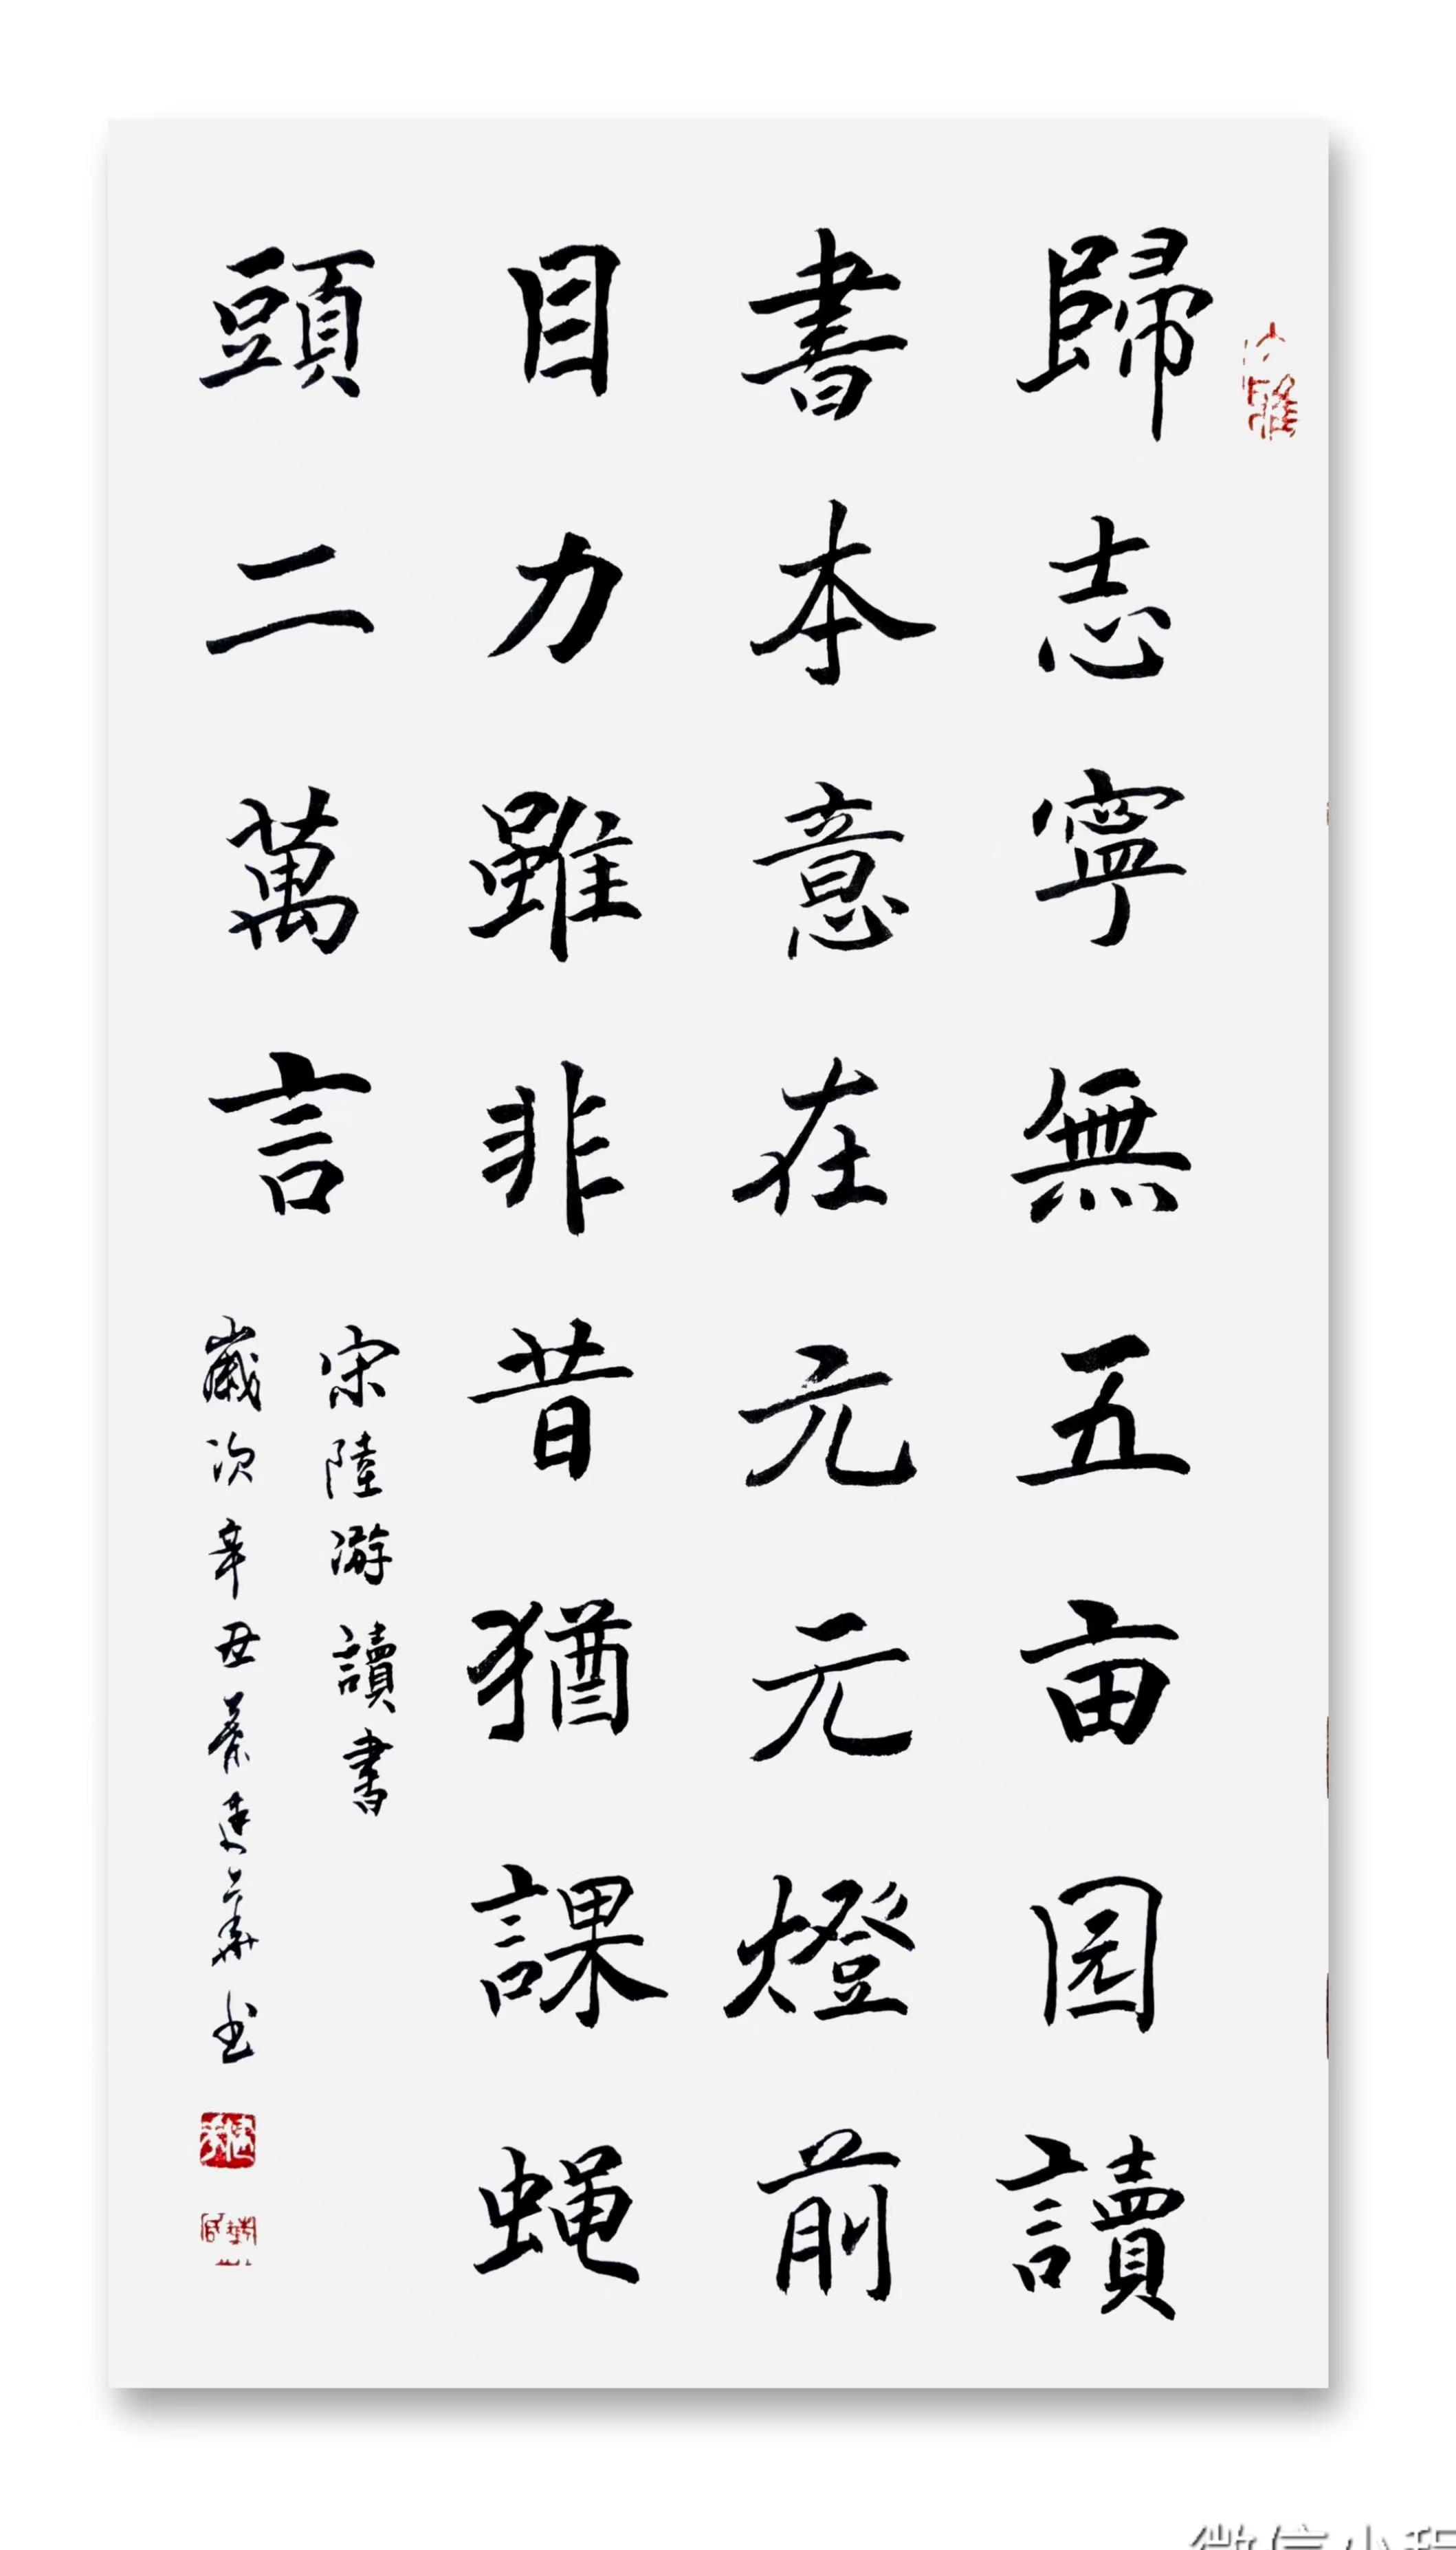 中国大众文化学会名人书画艺术发展委员会——叶建华